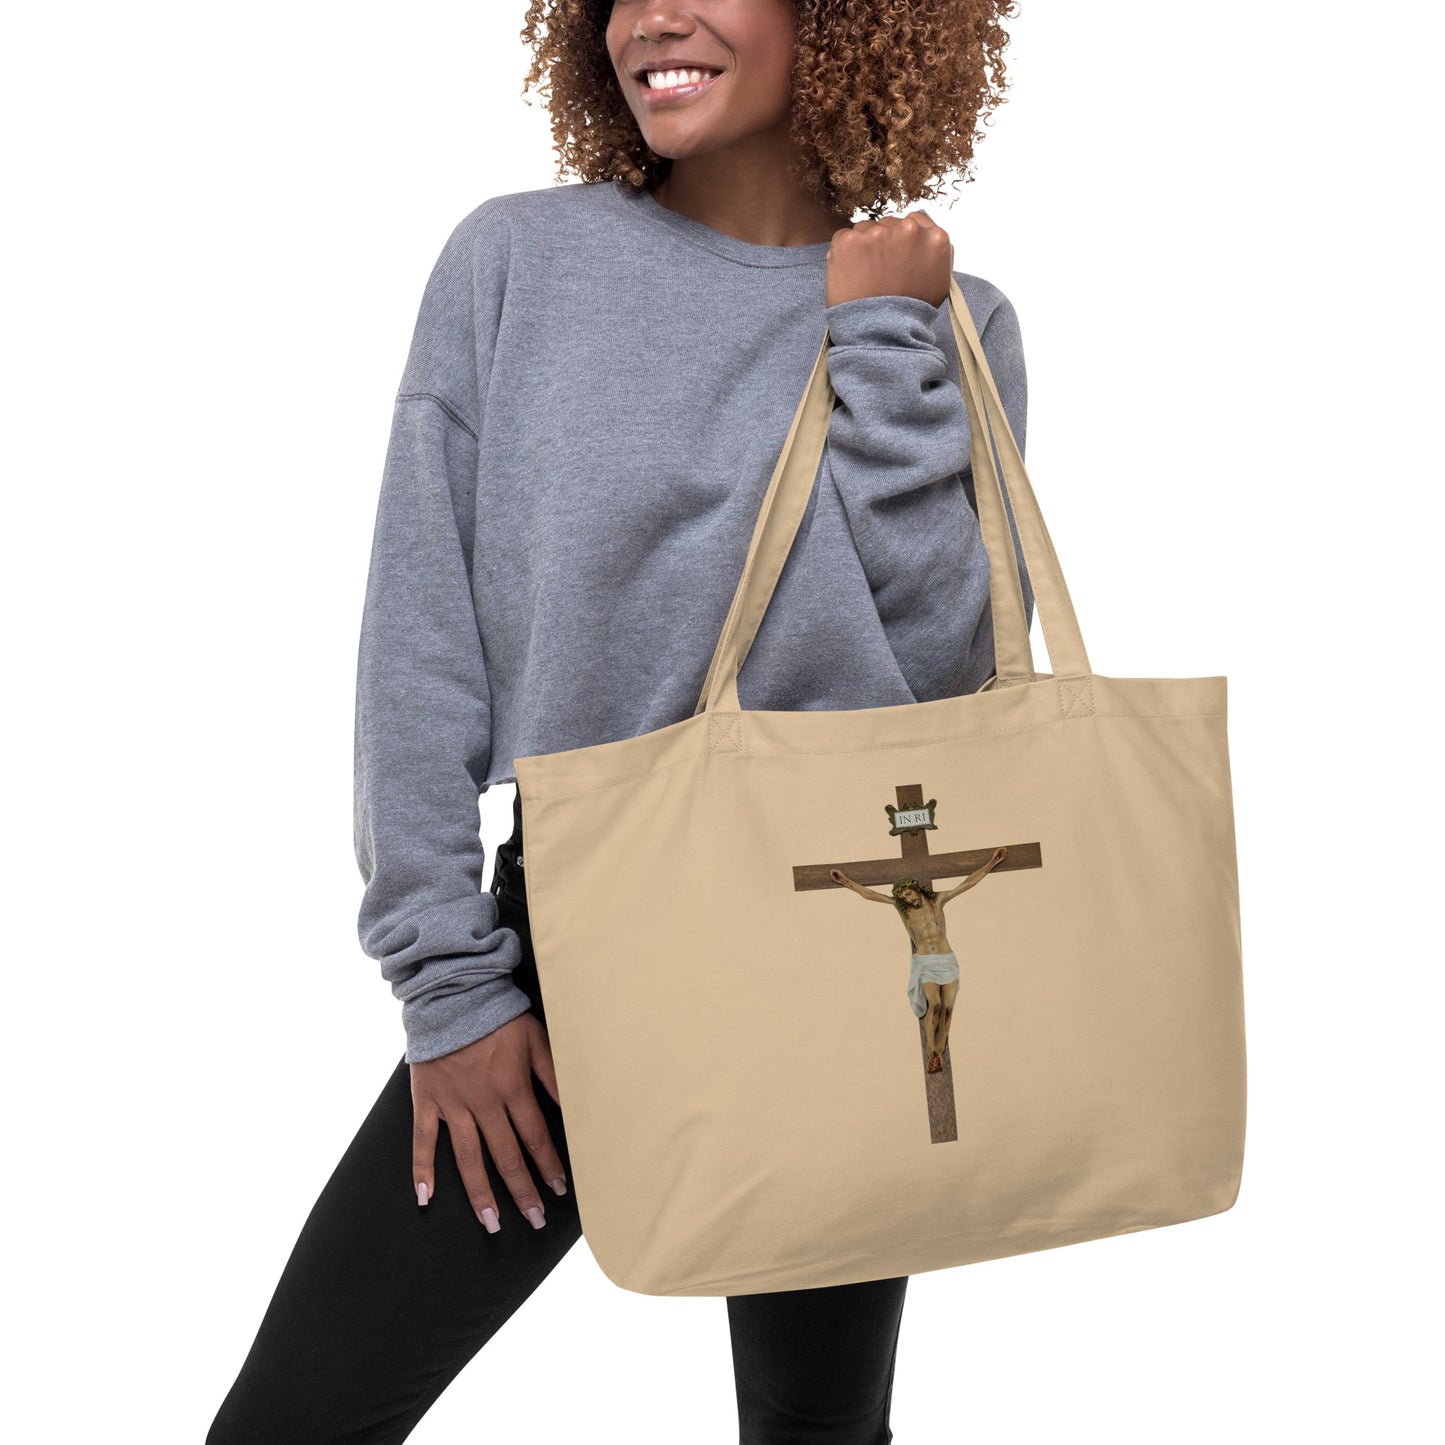 Jesus Crucified Large organic tote bag